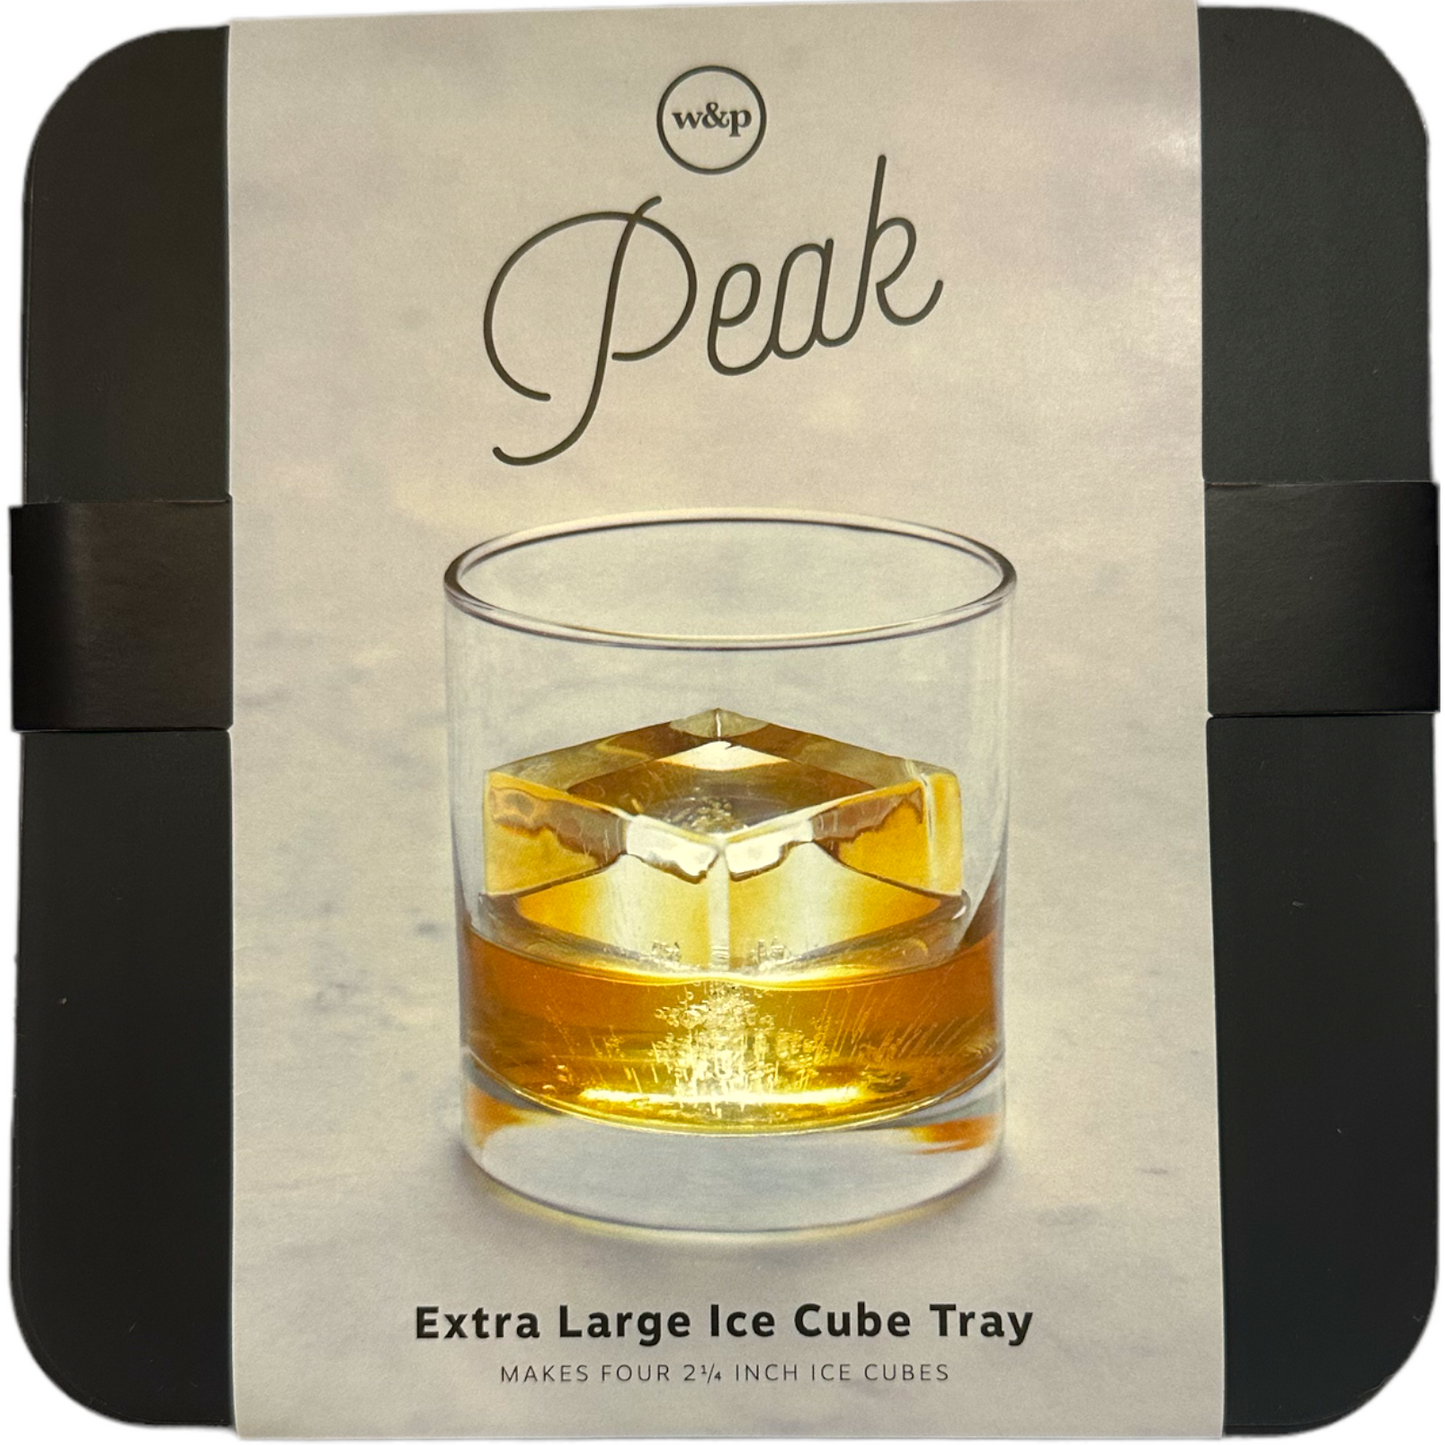 W&P Peak Extra Large Ice Cube Tray